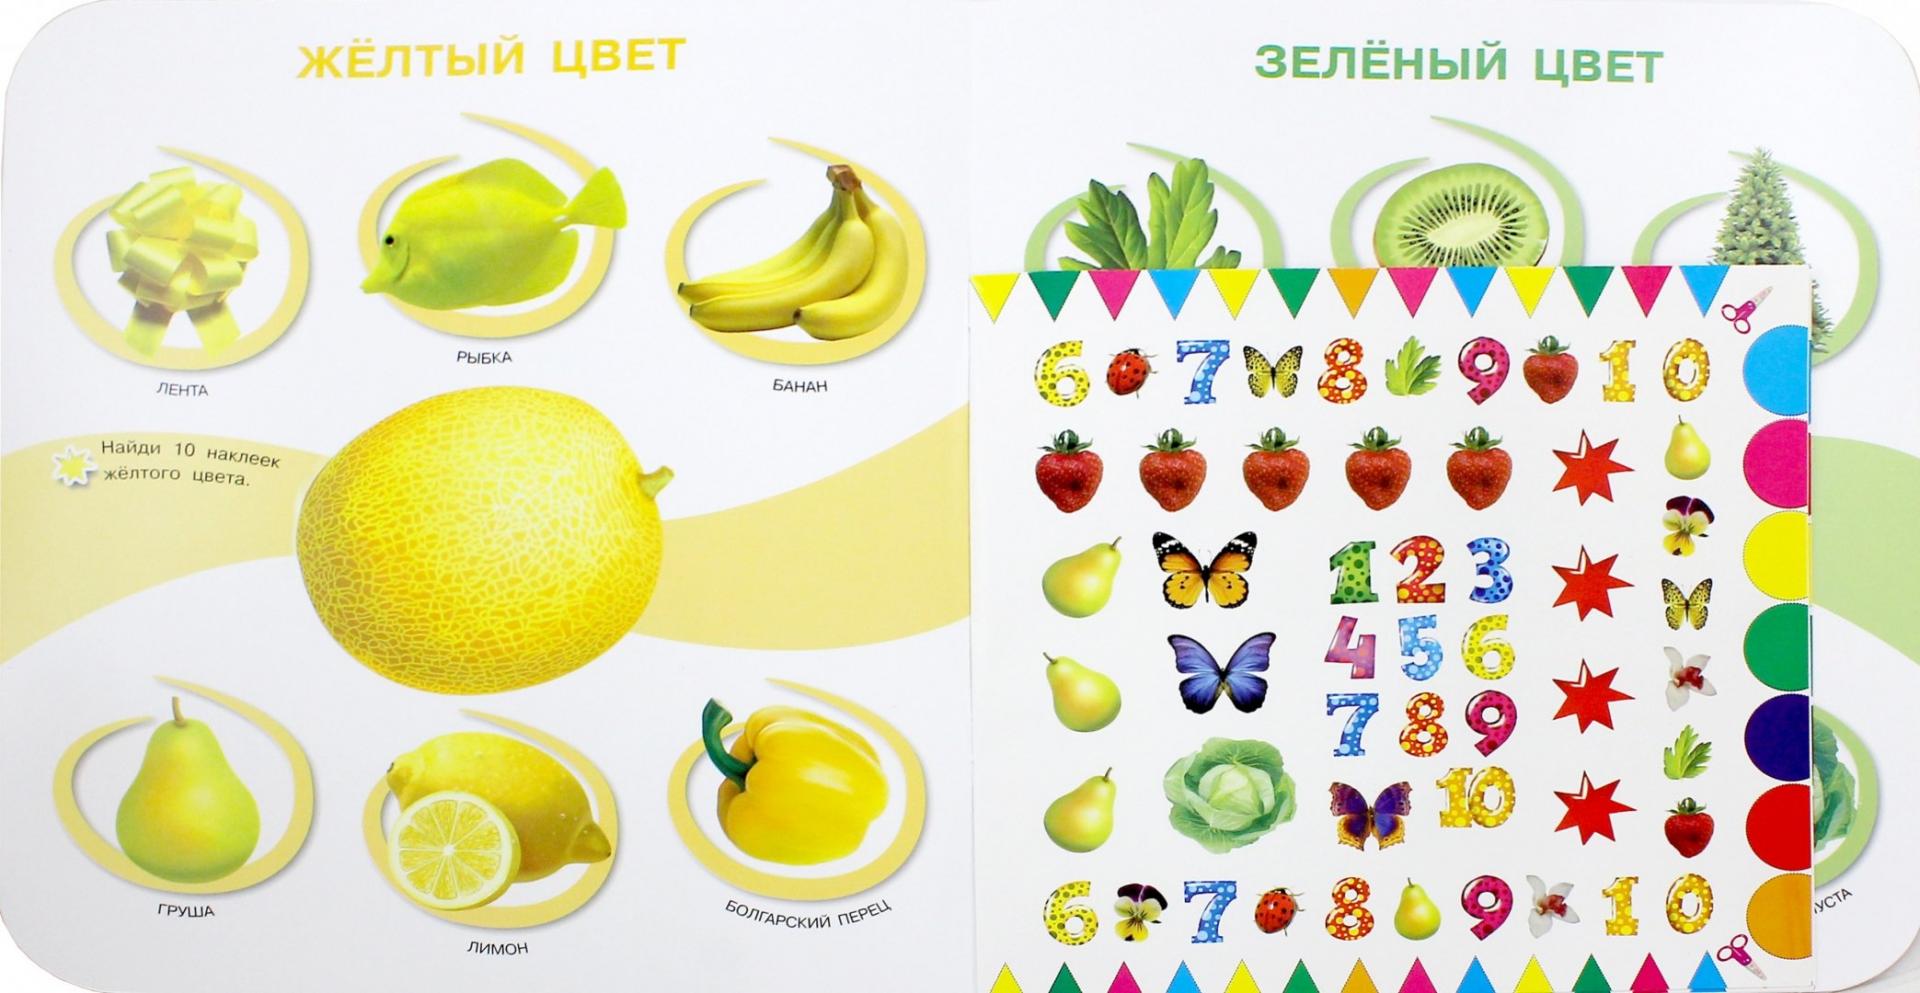 Иллюстрация 1 из 6 для Все цвета, которые должен знать ребенок - Валентина Дмитриева | Лабиринт - книги. Источник: Лабиринт